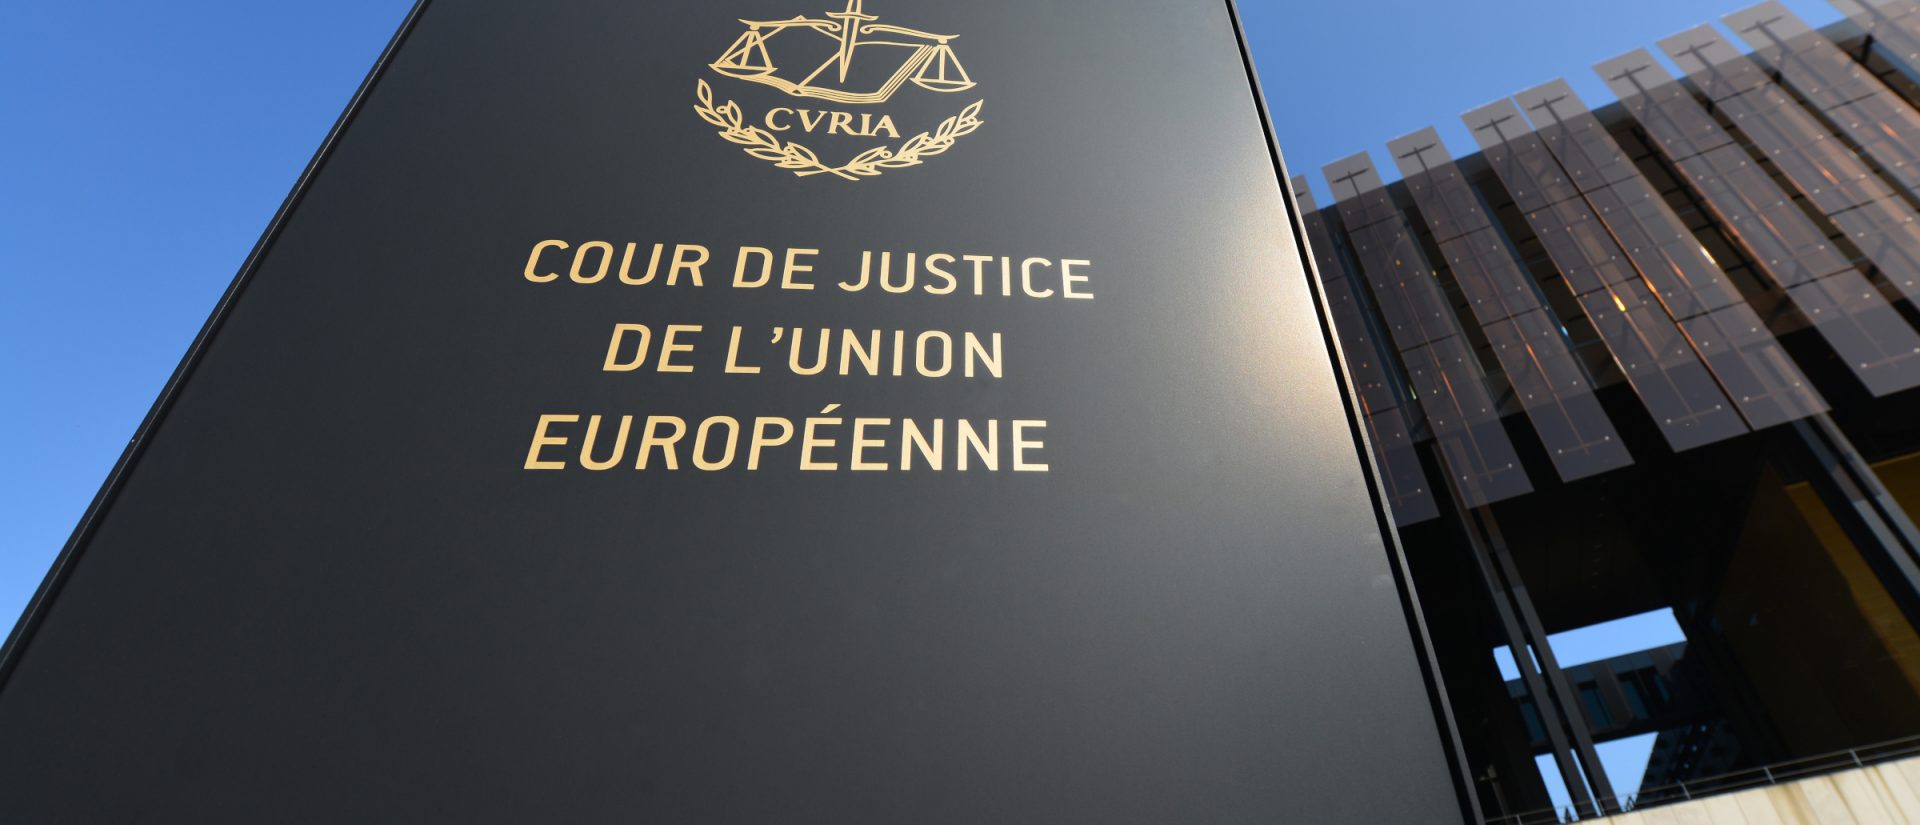 Суд газопровод. Суд ЕС В Люксембурге. Верховный суд Евросоюза. Суд европейских сообществ. Суд европейского Союза эмблема.